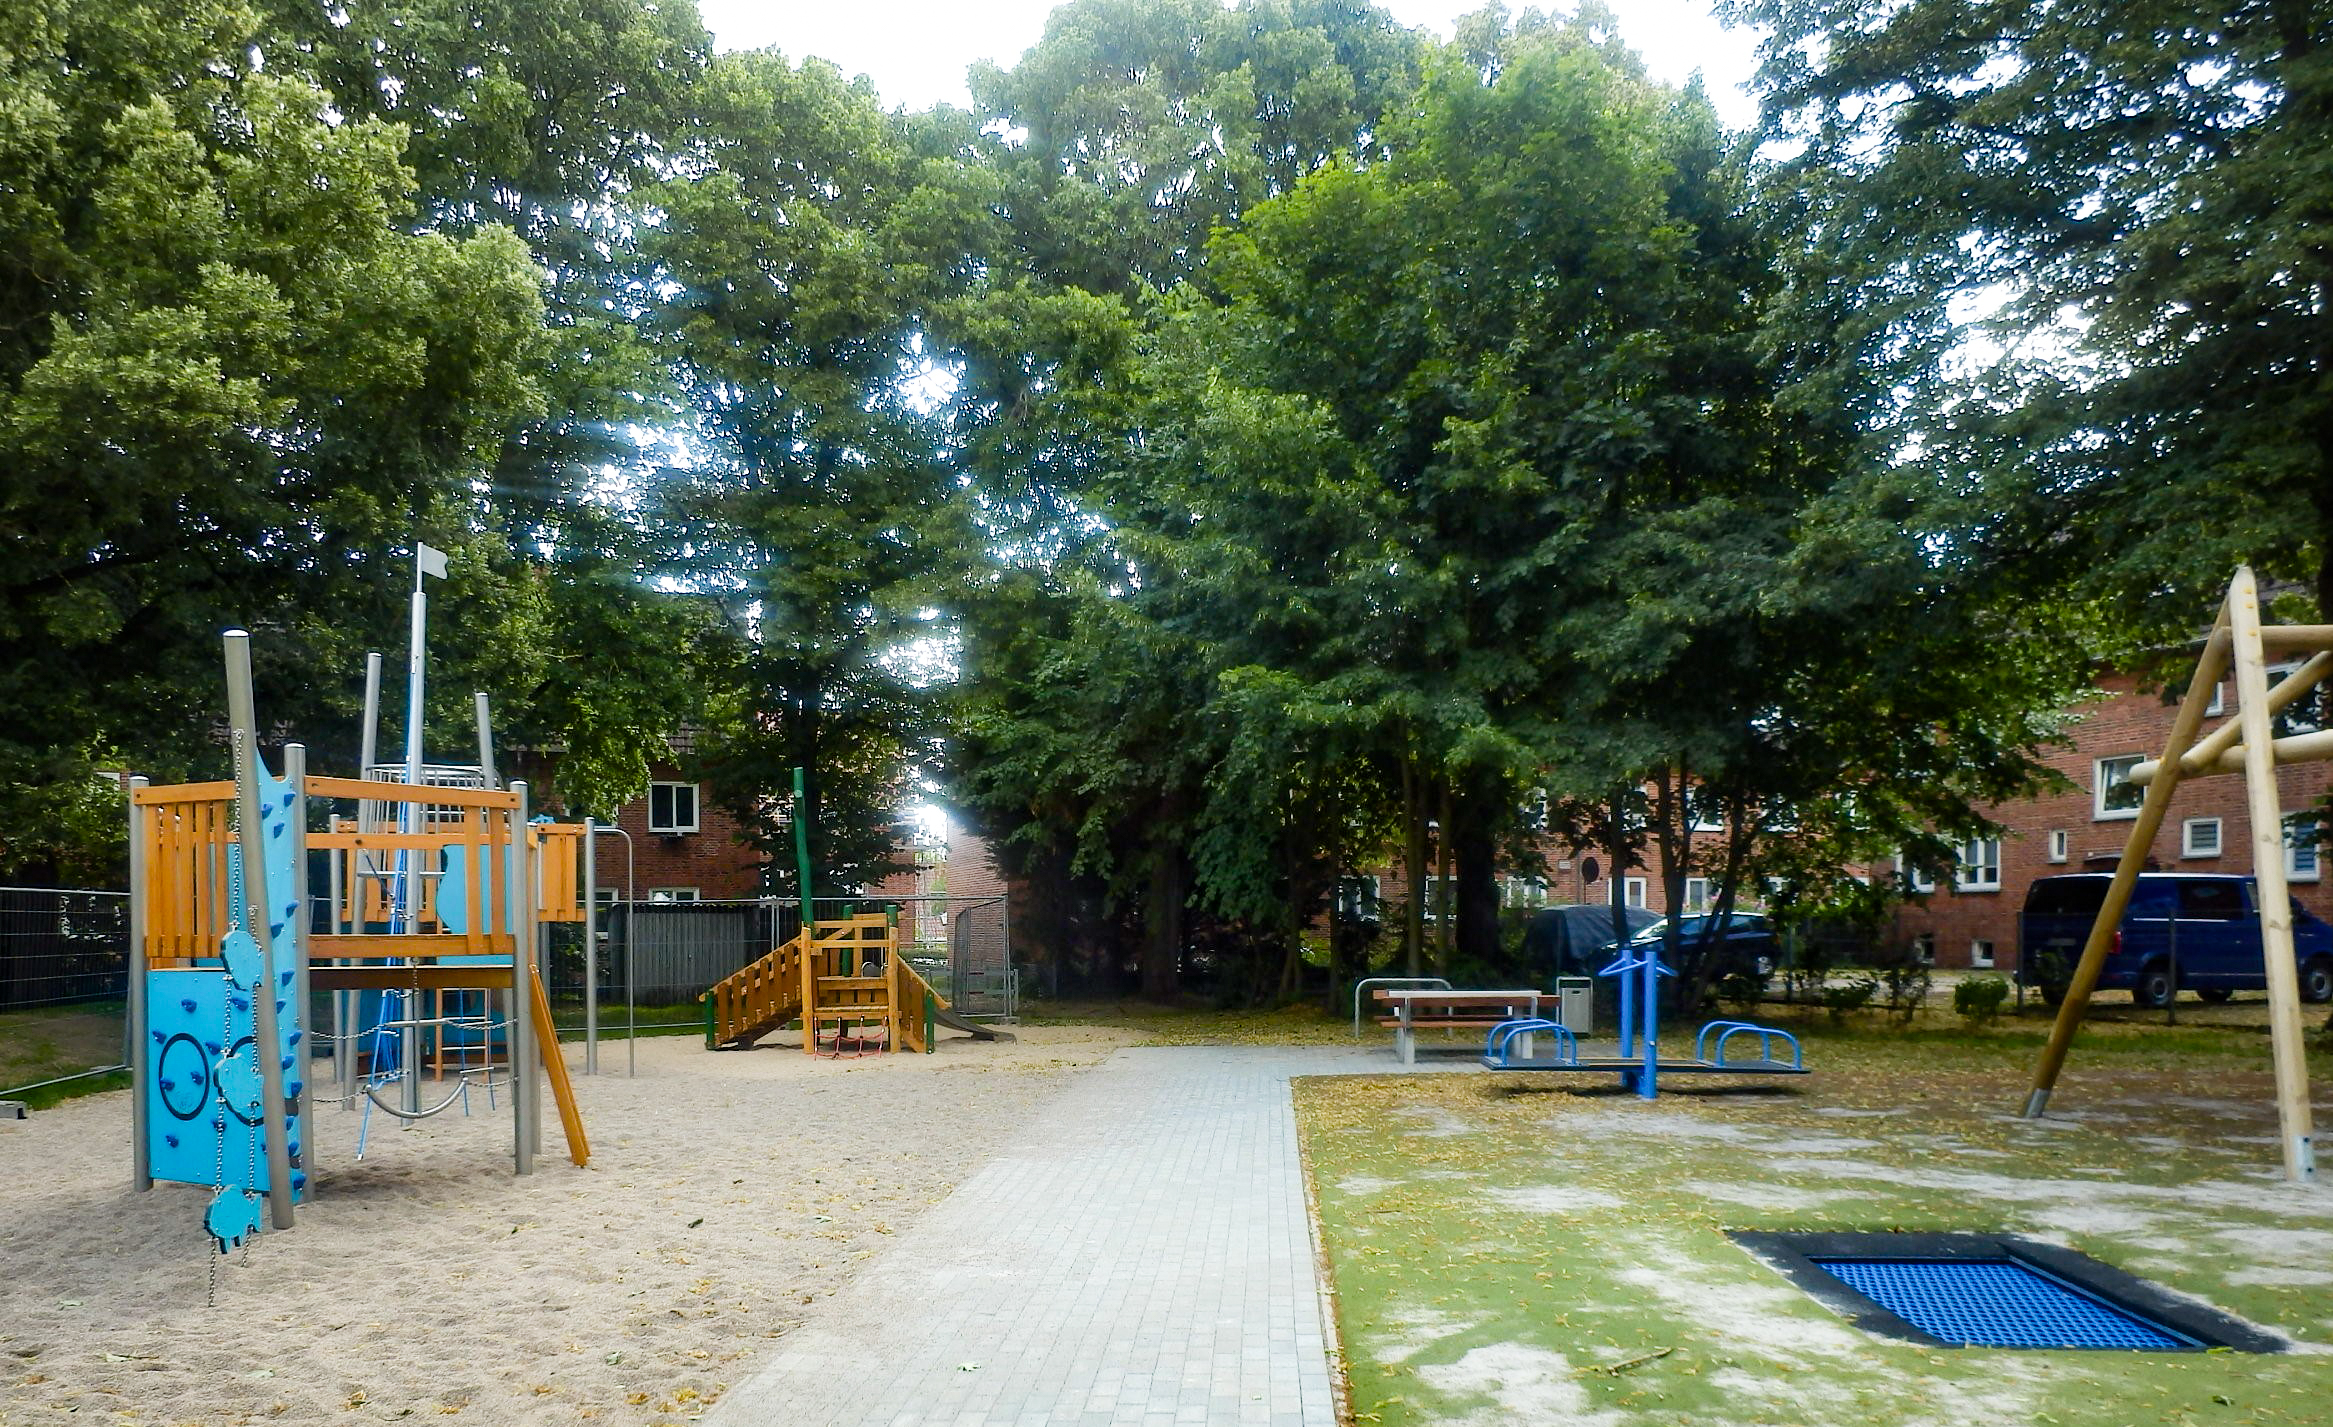 Neuer Spielplatz in Lewenberg: Spielspaß unter großen Bäumen